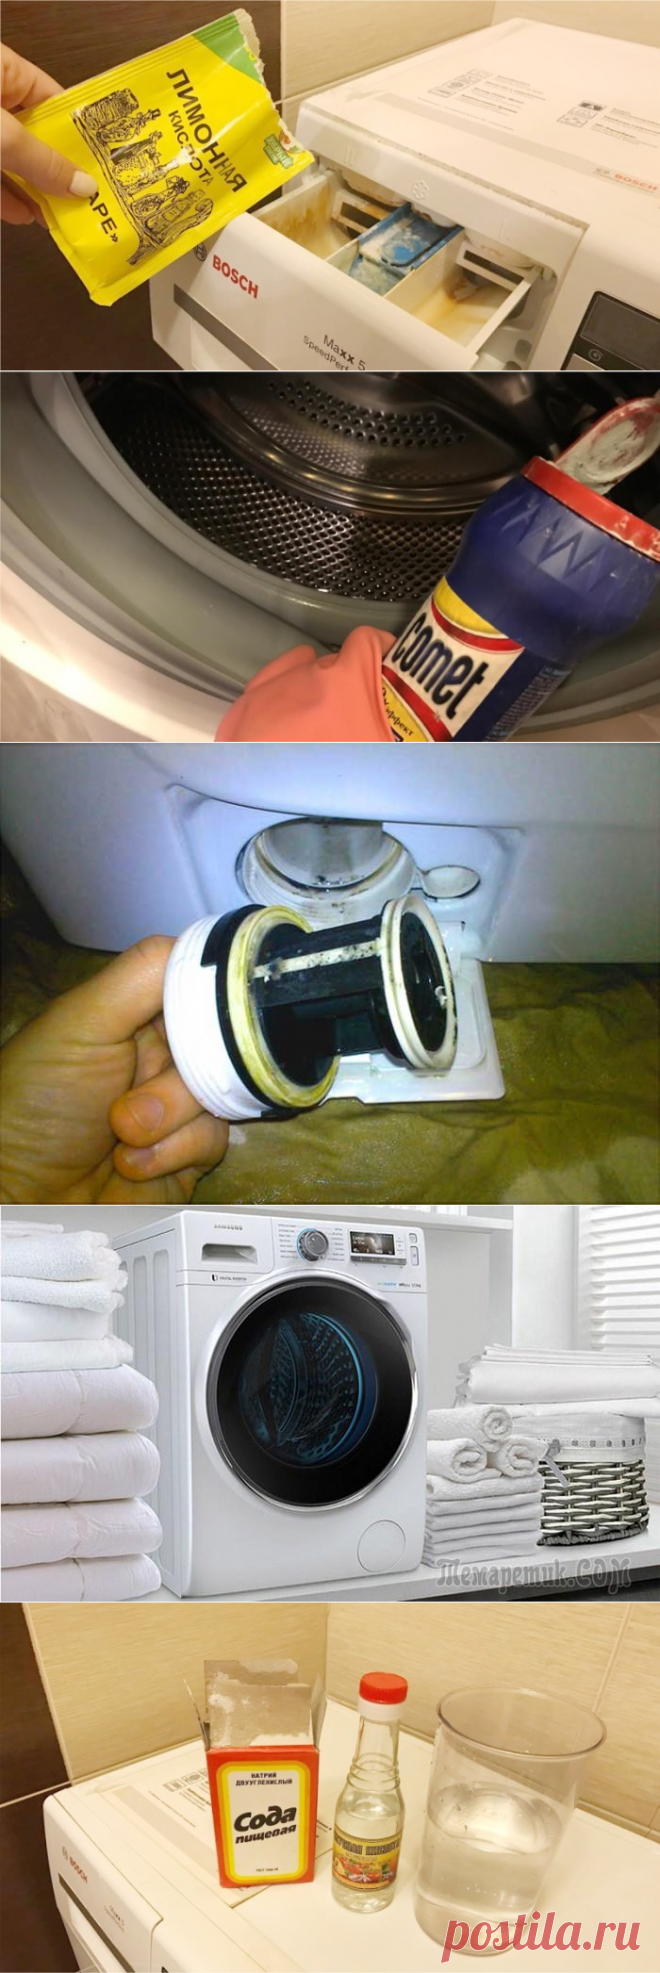 Чем почистить стиральную машину автомат от запаха. Чистка стиральной машины. Чистка стиральной машины от накипи. Стиральная машина отсек для чистки. Мытье стиральной машины.